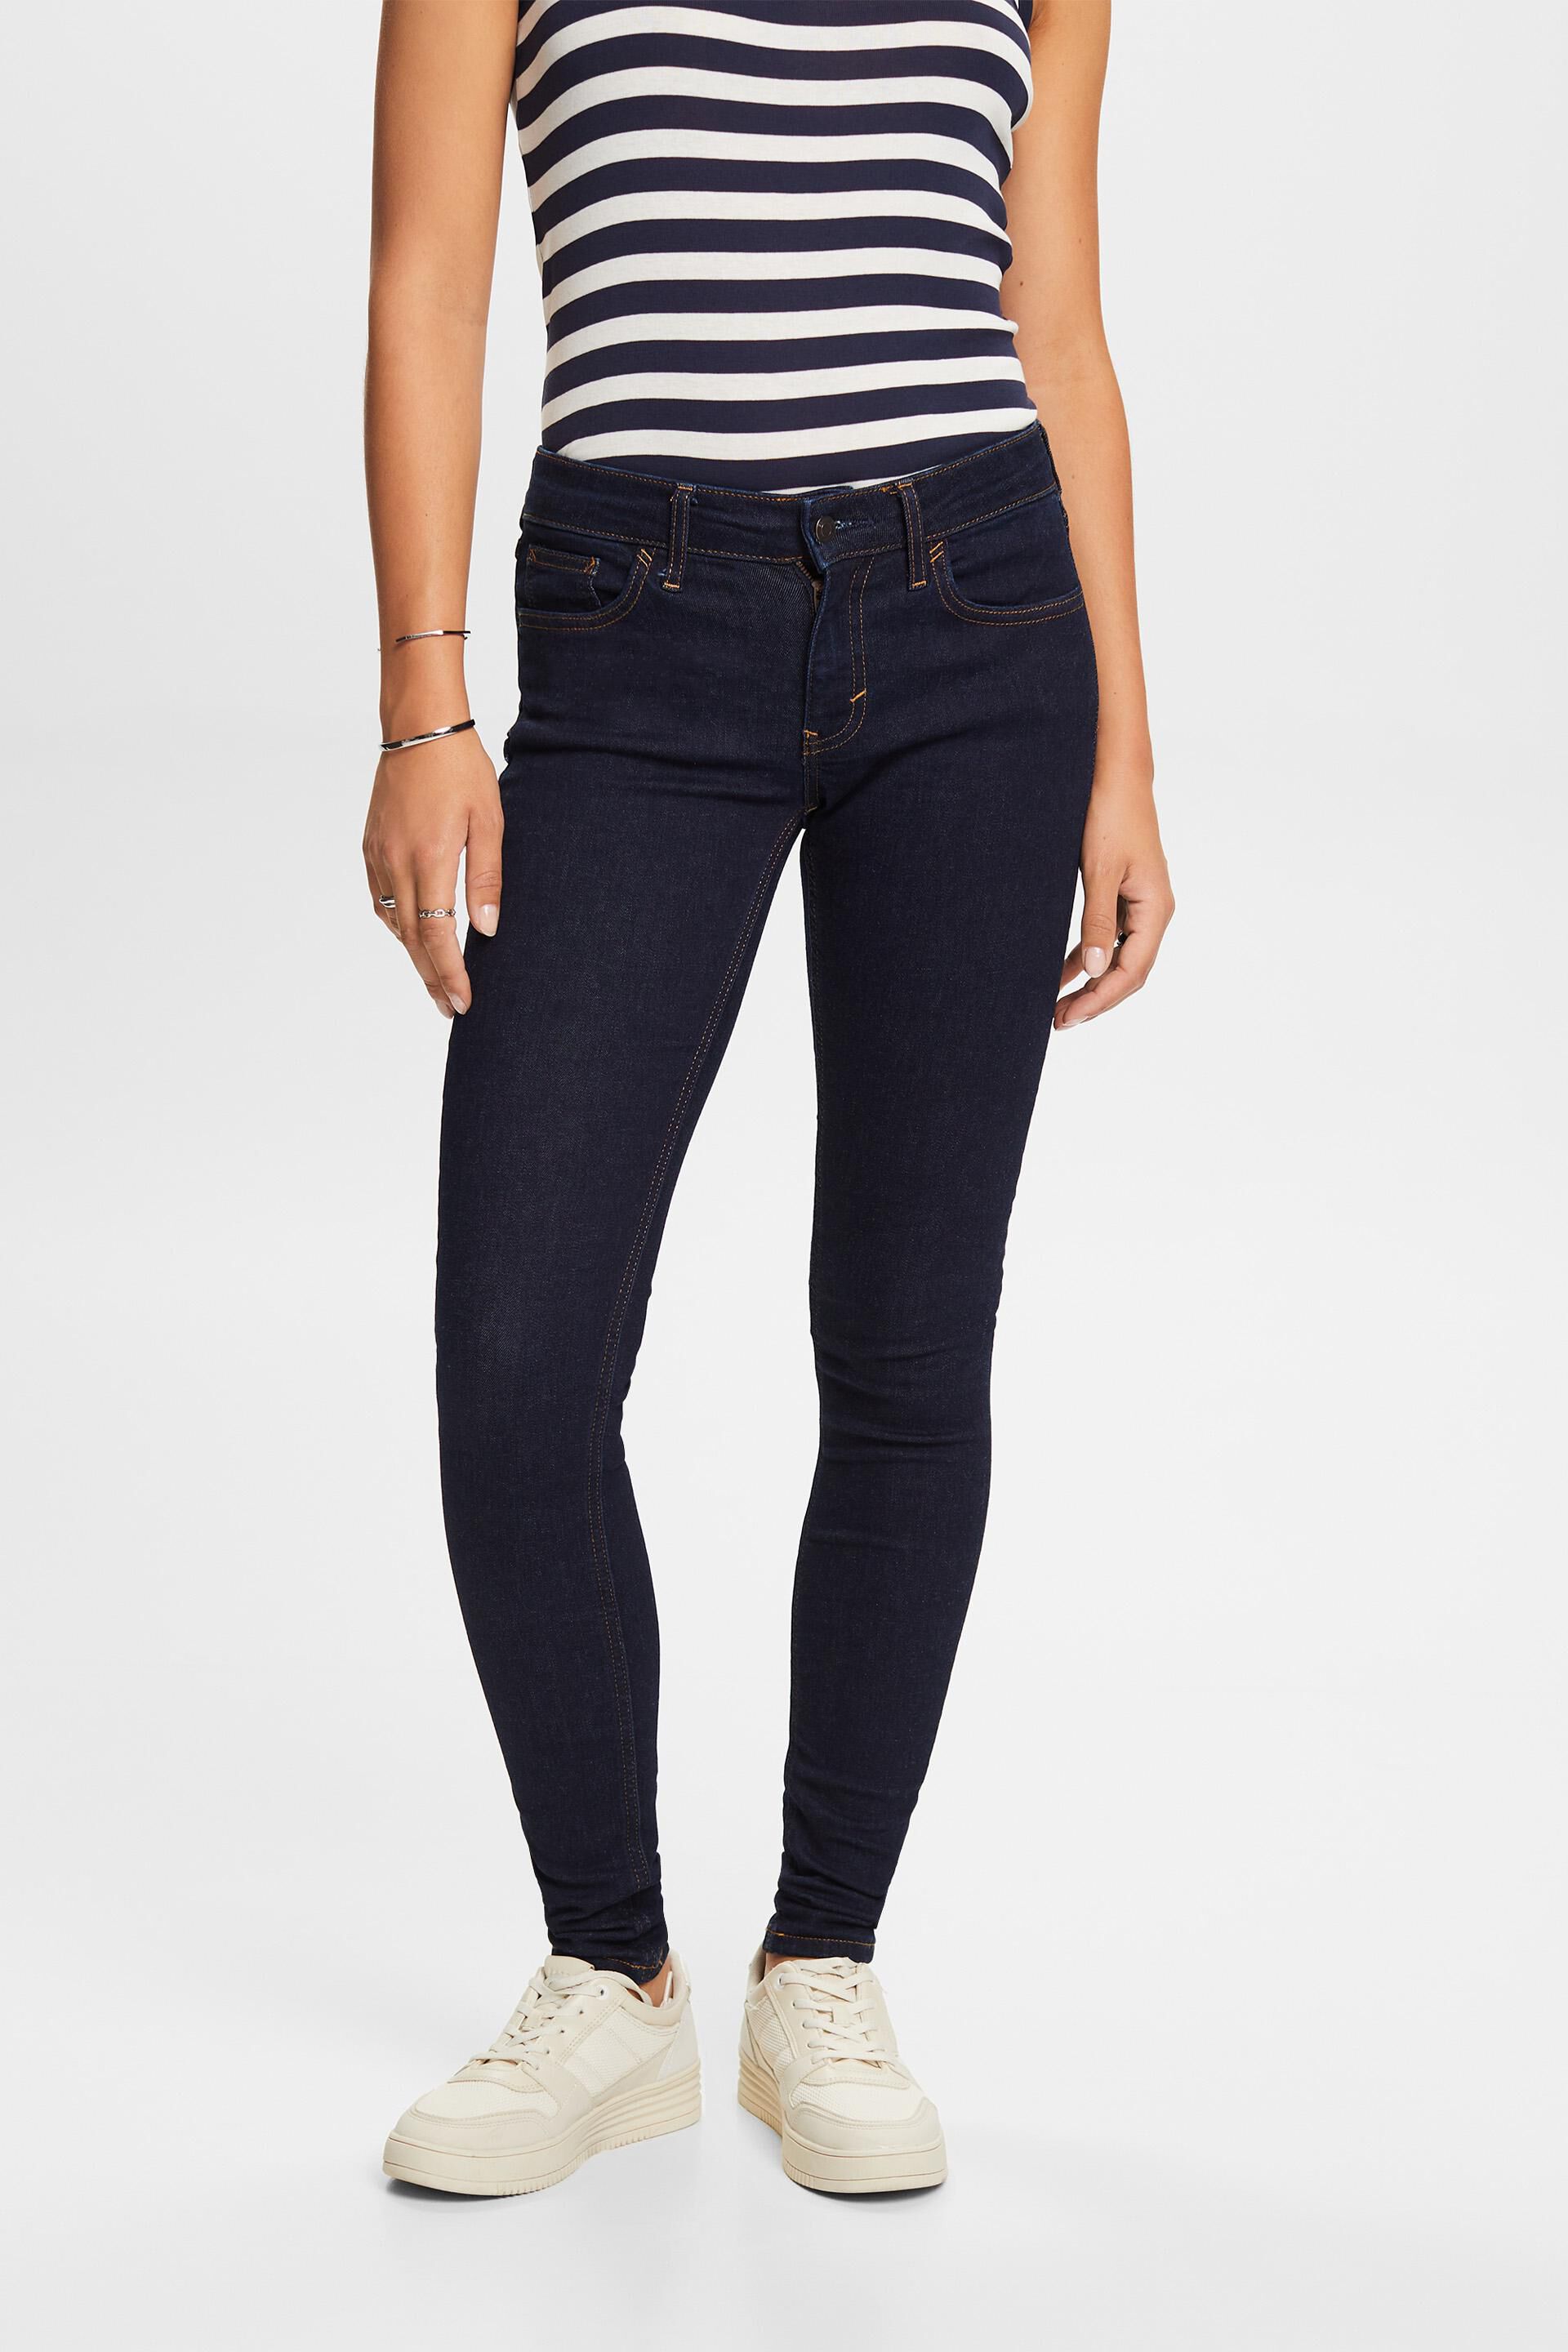 Esprit cotton Stretch blend jeans,